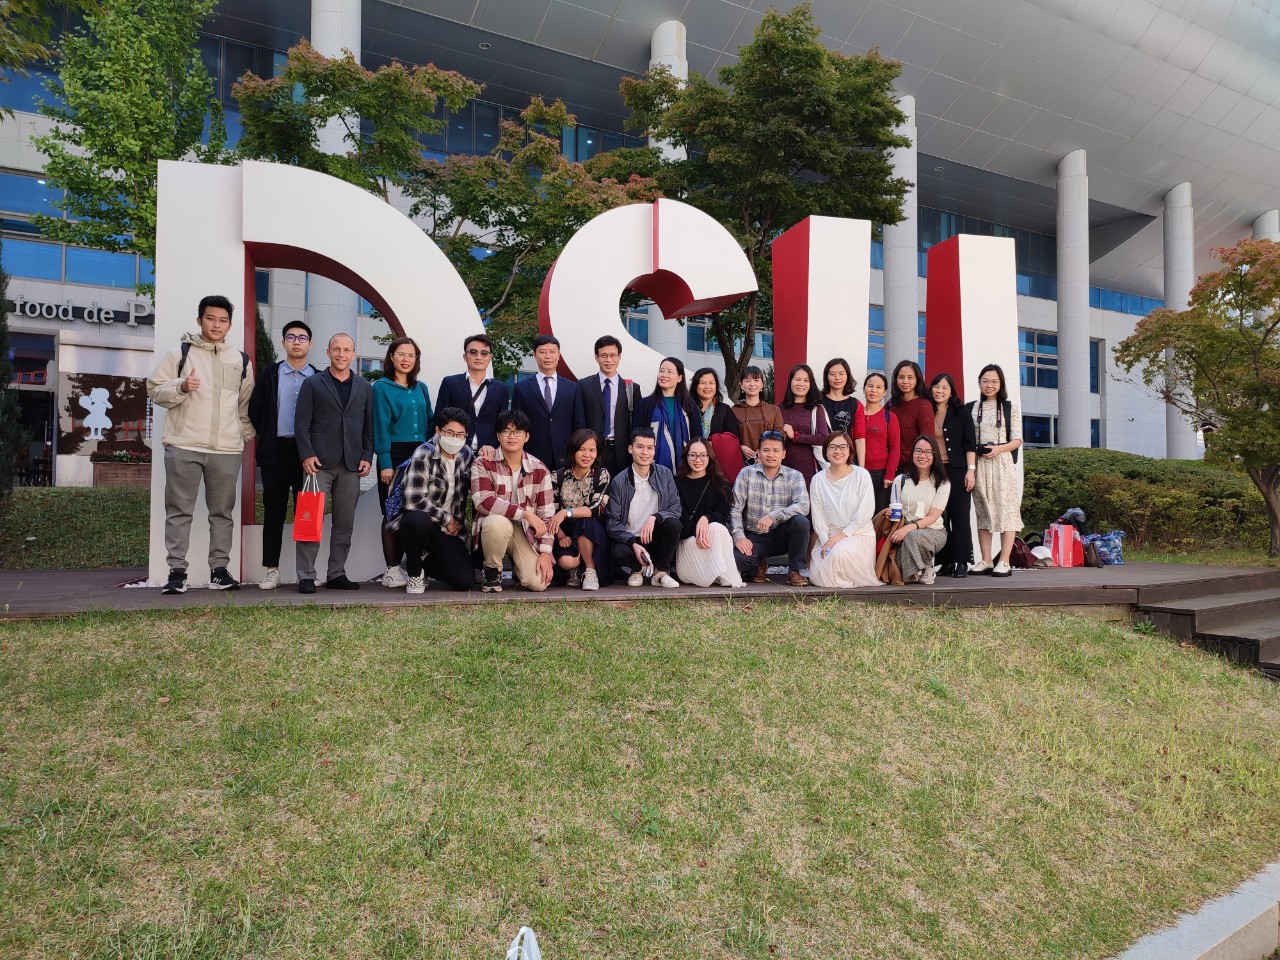 Đoàn công tác trường Đại học Kinh tế quốc dân thăm và làm việc tại Đại học  Dongseo, Hàn Quốc - Khoa Quản trị kinh doanh - Trường đại học Kinh tế quốc  dân